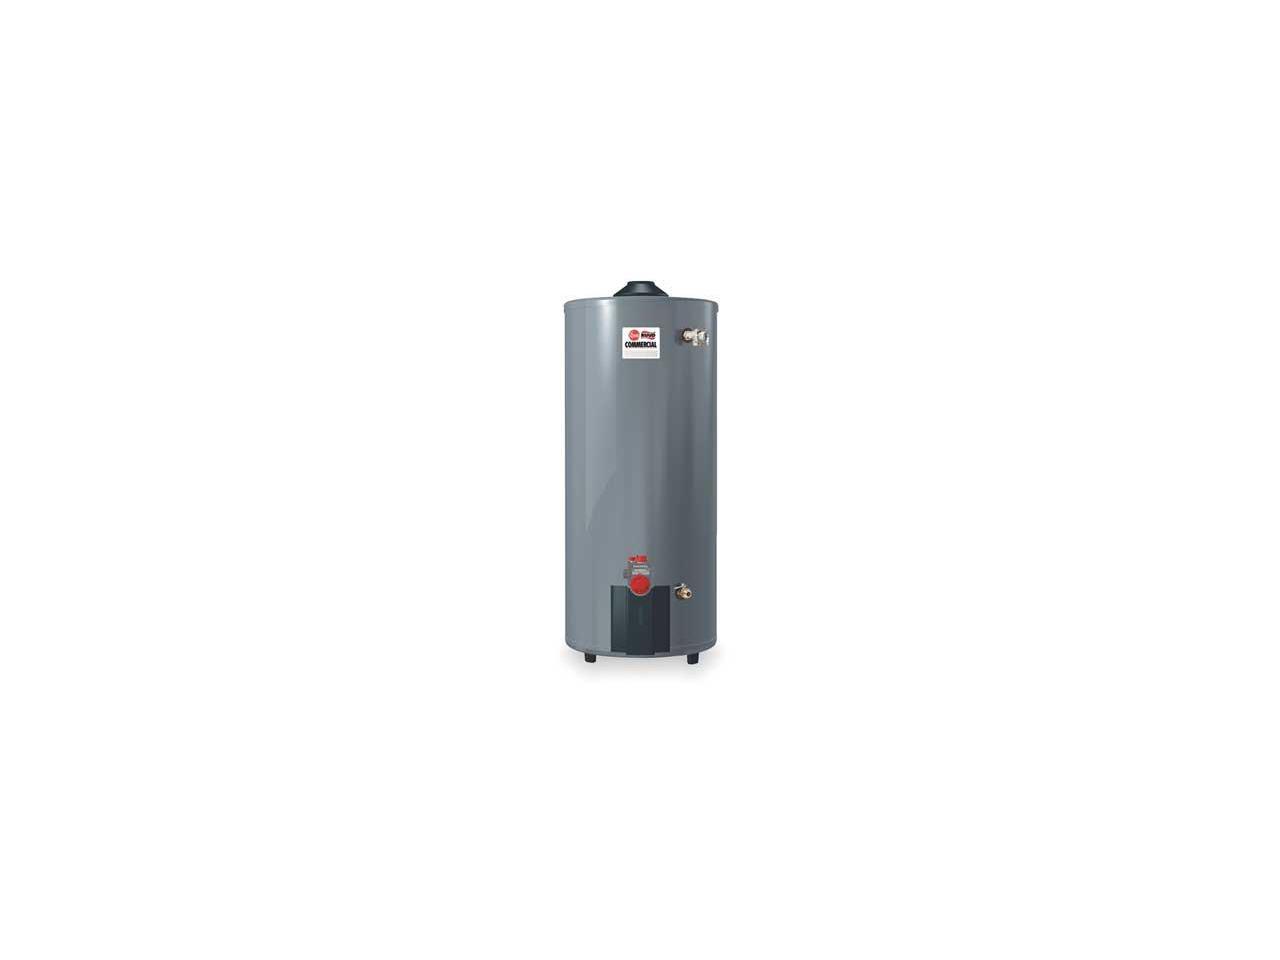 RHEEM-RUUD G75-75N-3 Natural Gas Commercial Gas Water Heater, 75 gal